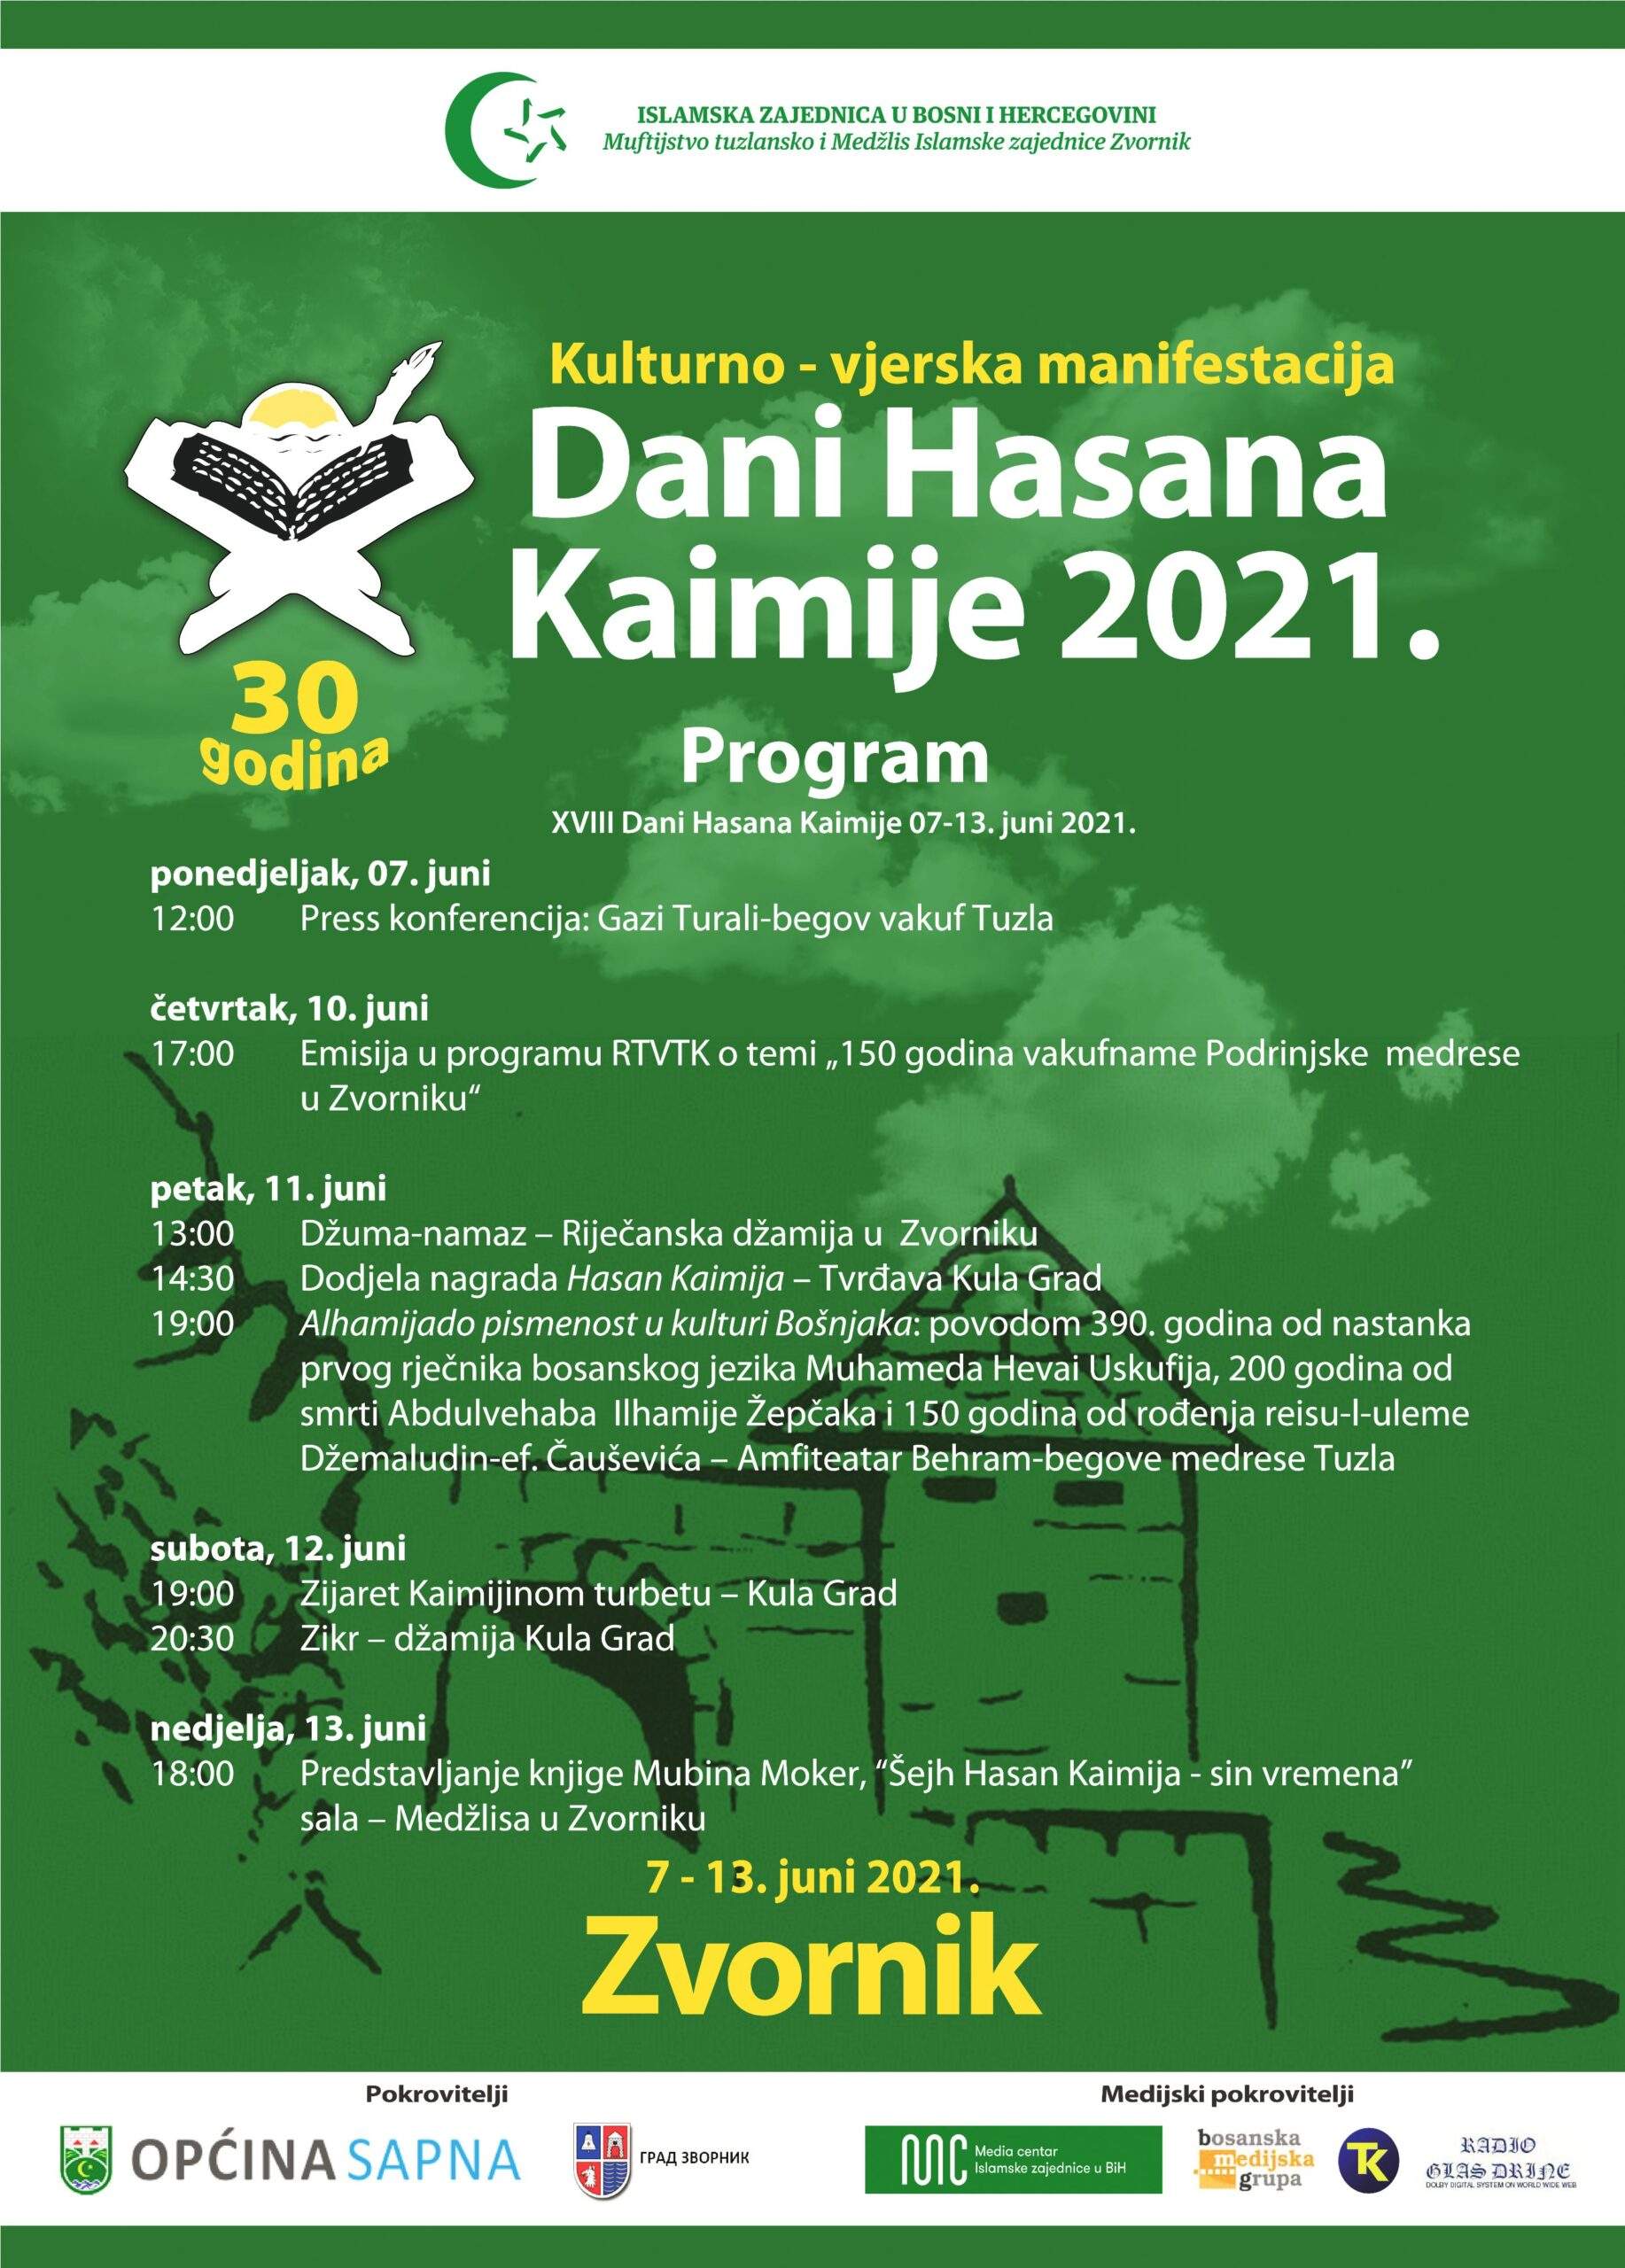 Novi-plakat-Kaimija-2021-1-scaled.jpg - Trideset godina kulturno-vjerske manifestacije Dani Hasana Kaimije